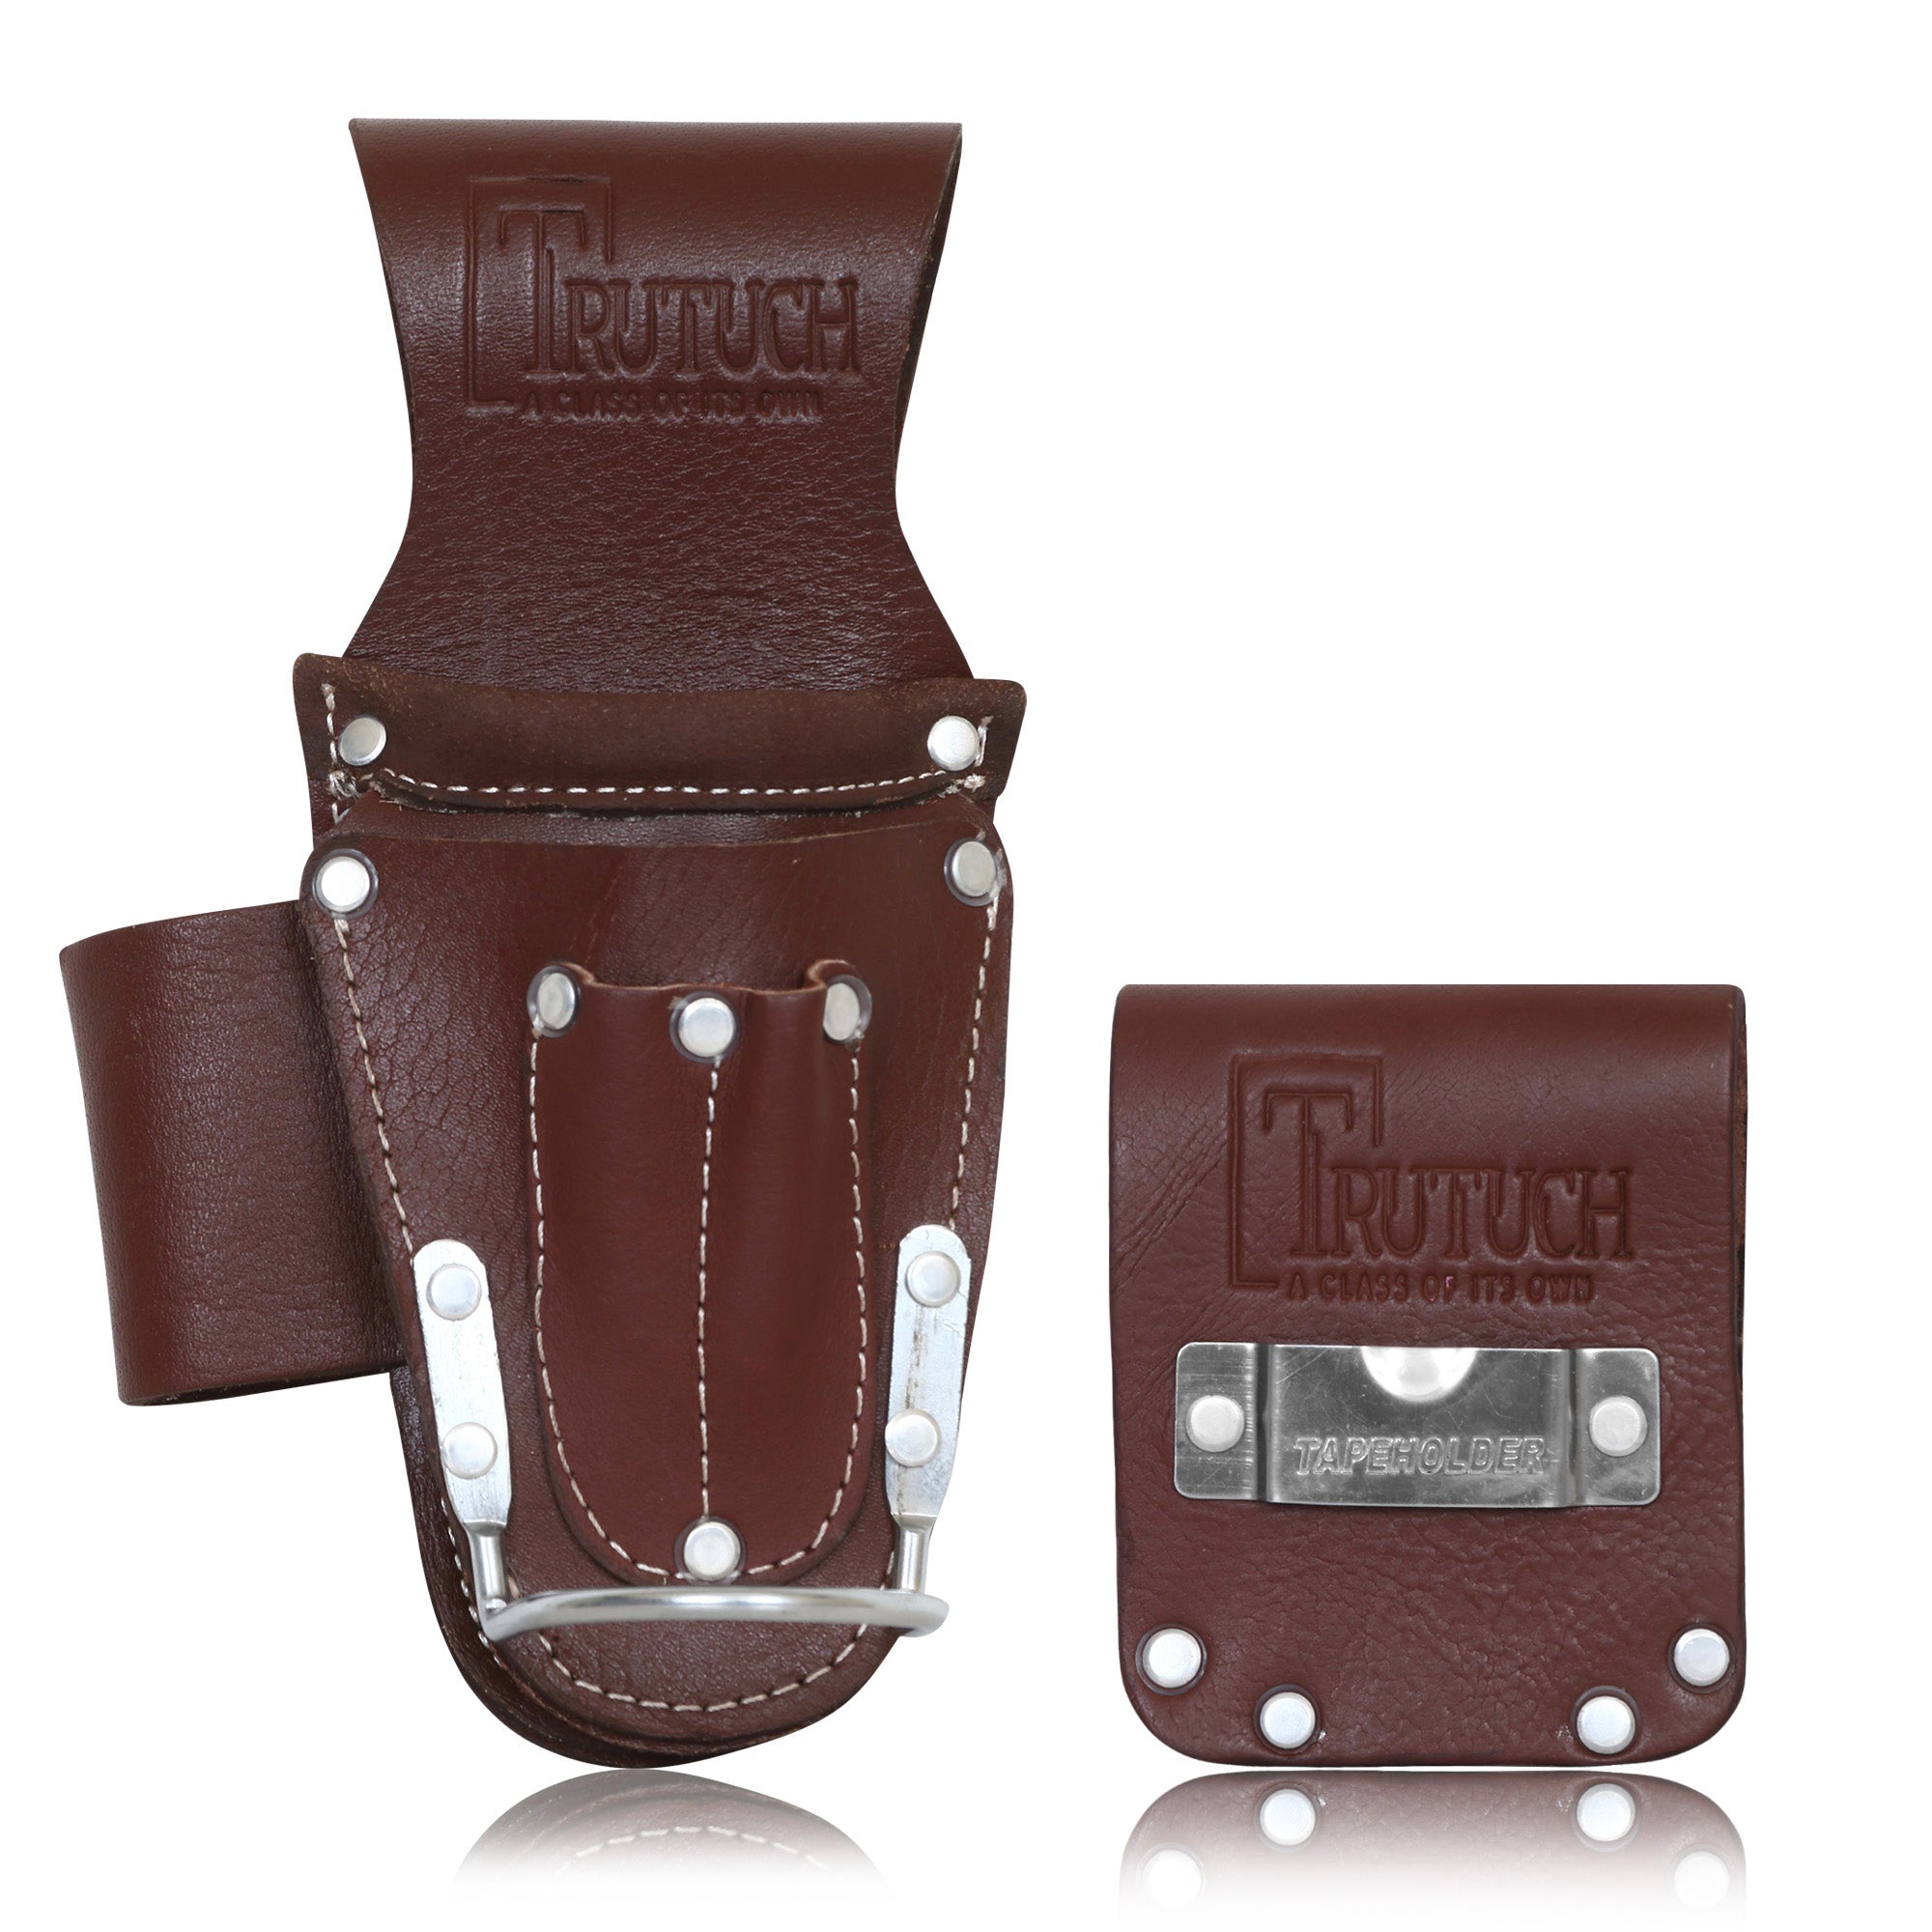 Trutuch Leather Hammer & Tape Holder, Plier Holster, Small Tool Holders, TT-620-H-630-H